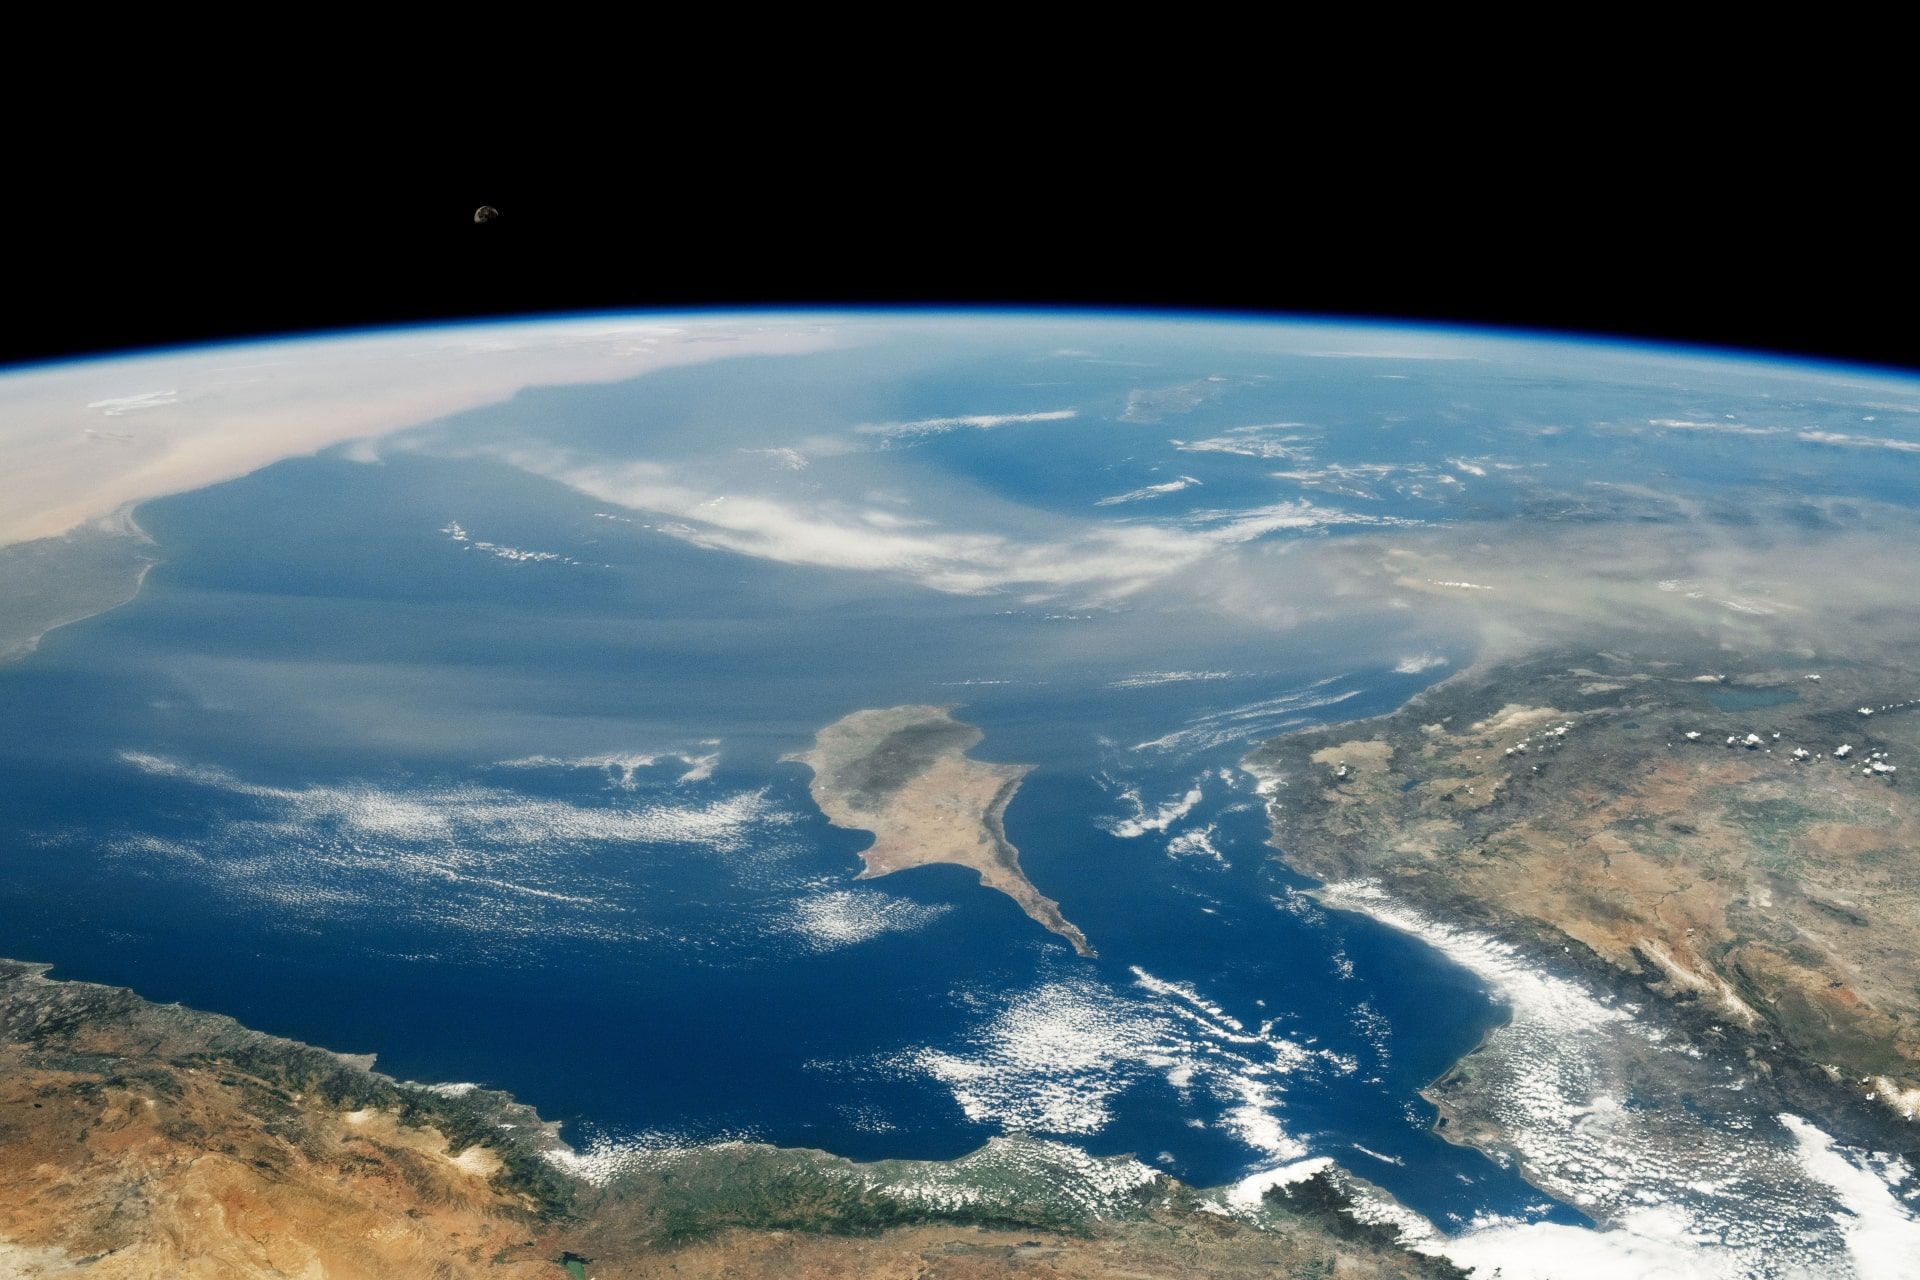 توده گرد و غبار در شرق مدیترانه بر فراز بخش هایی از یونان، ترکیه و قبرس